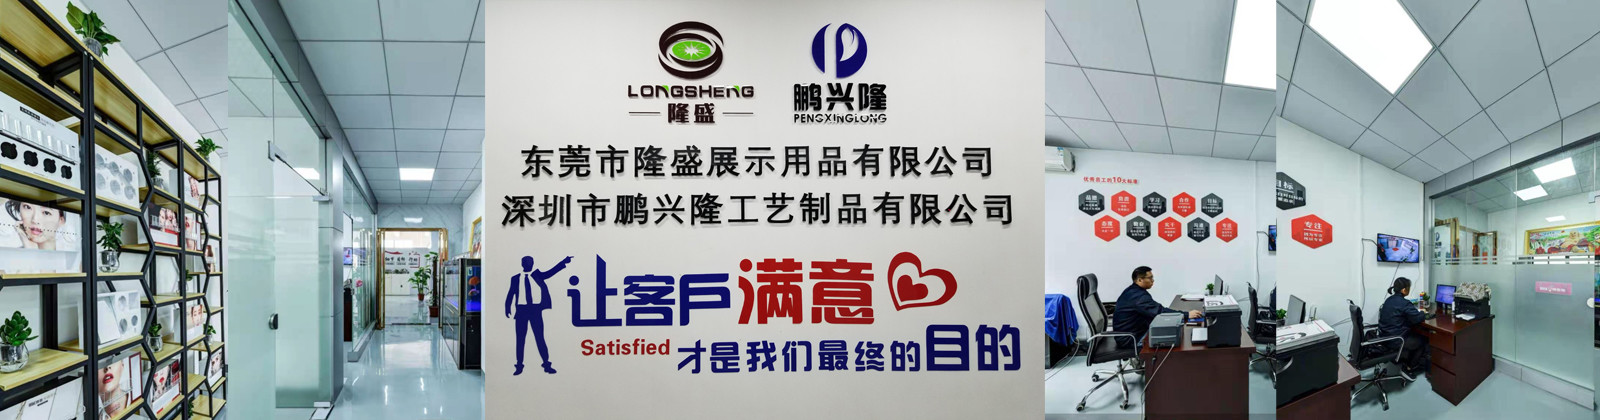 Chine ShenZhen Pengxinglong  Co., Ltd Profil de la société